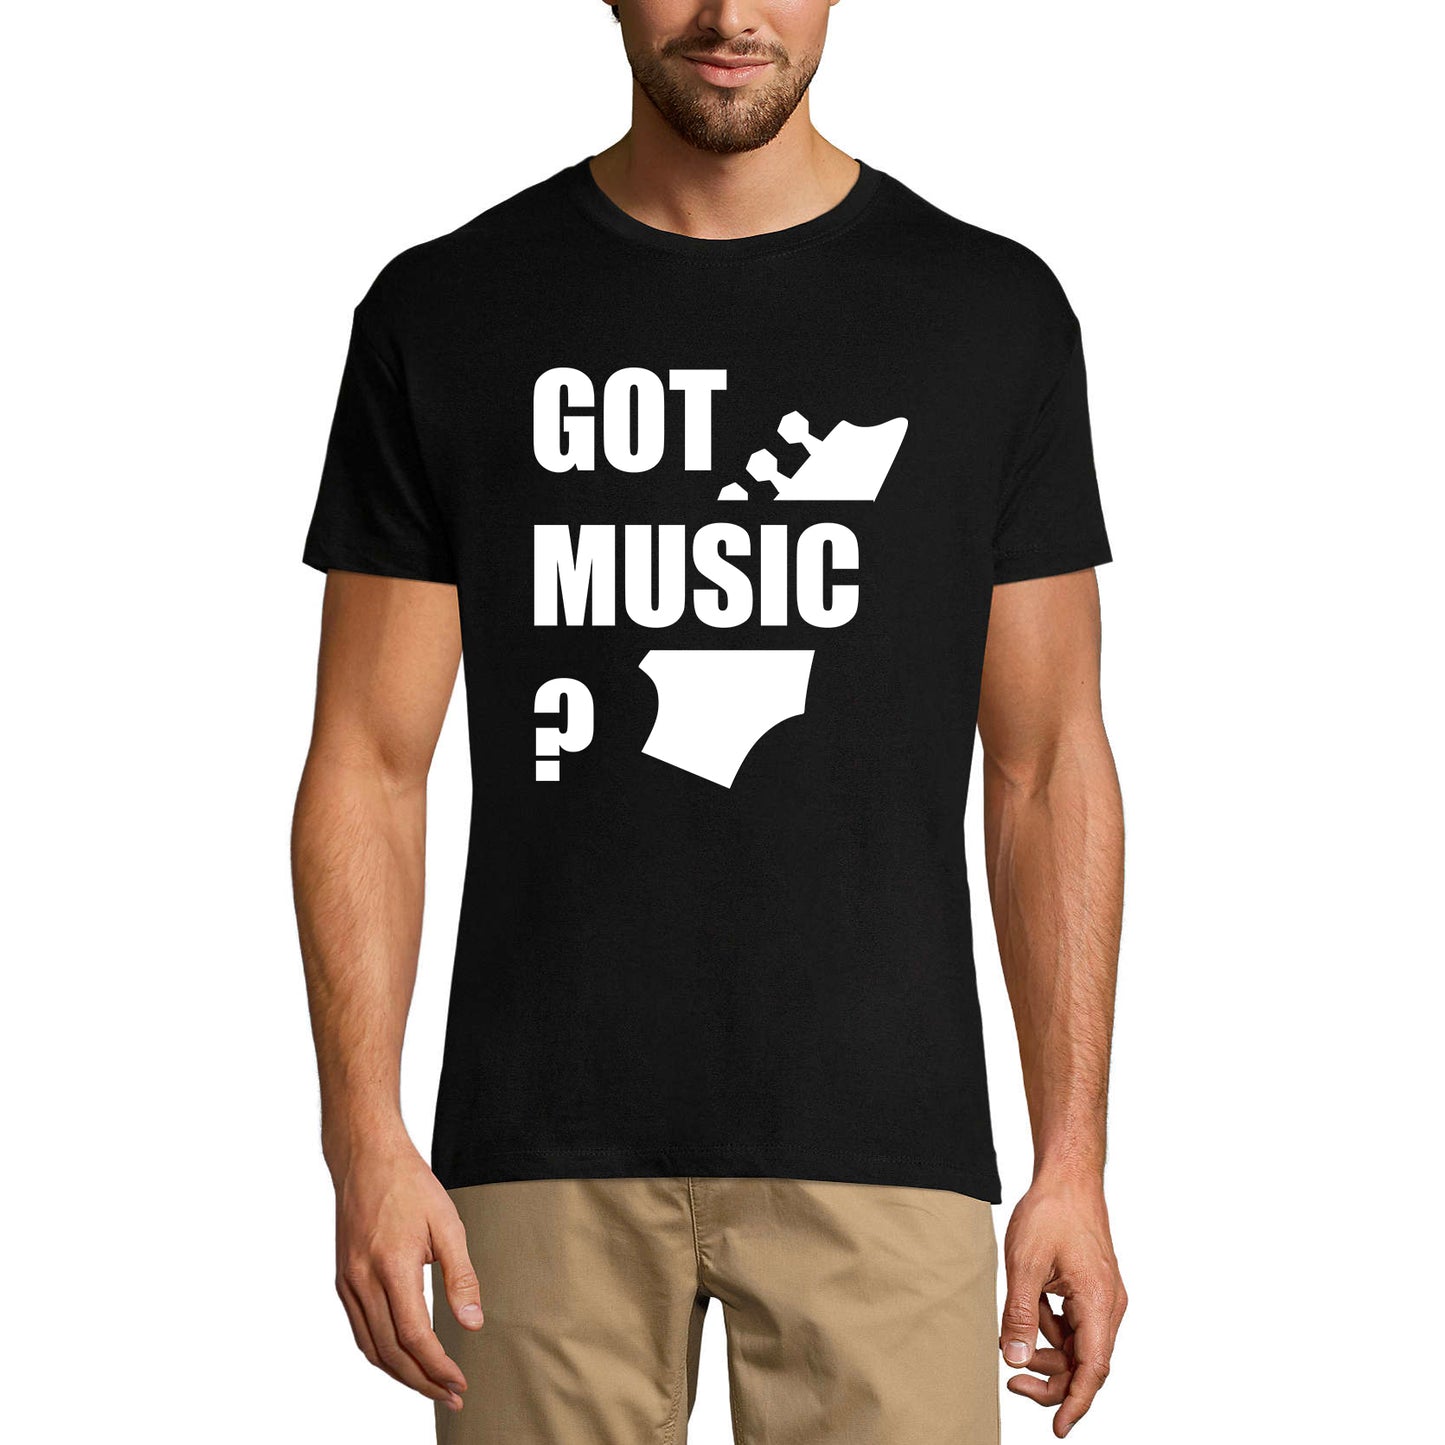 ULTRABASIC Men's Graphic T-Shirt Got Music - Funny Shirt for Musician